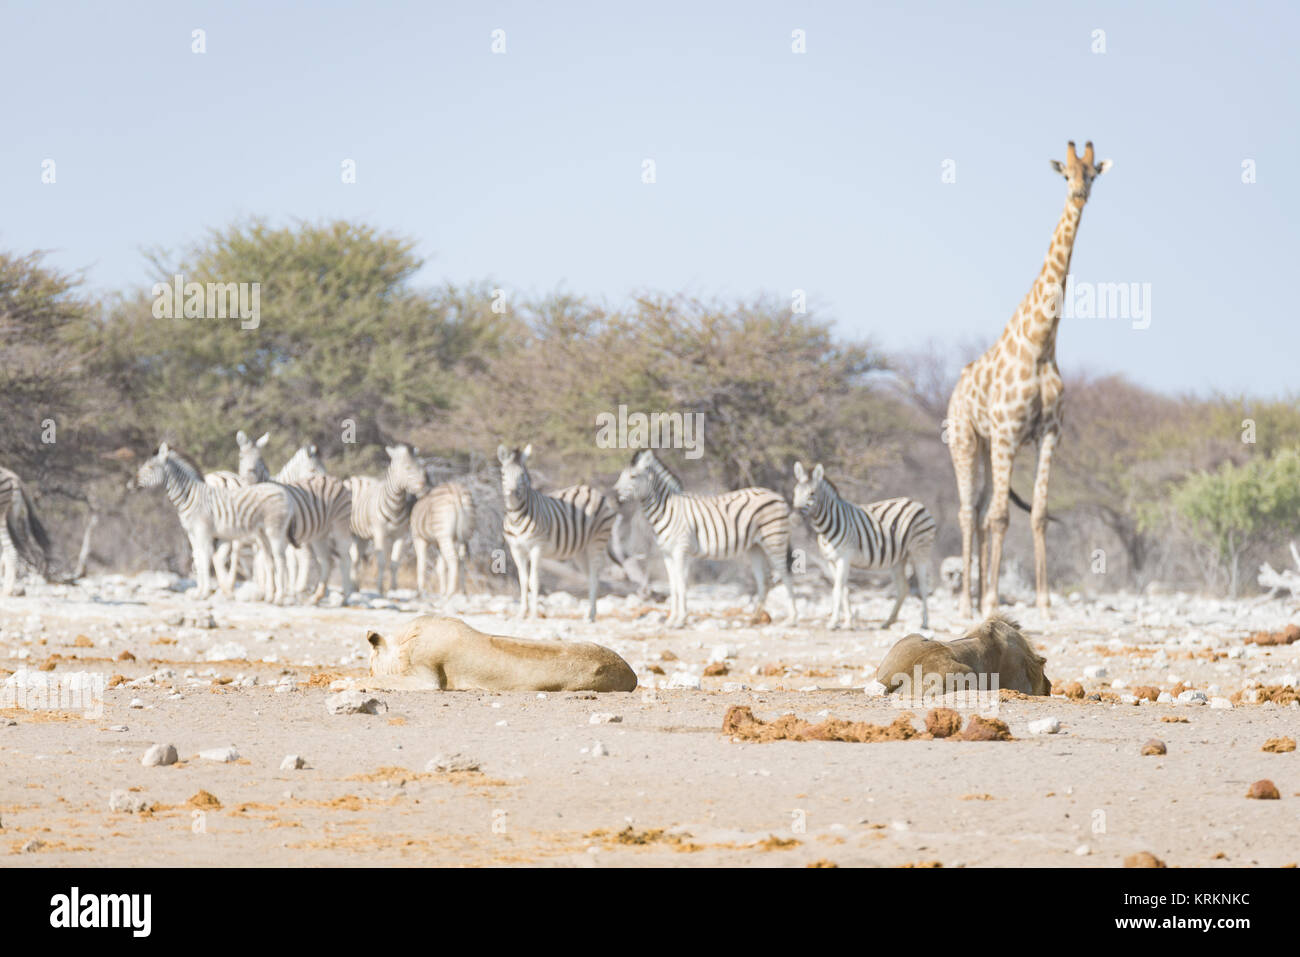 Girafe autour de lions couchés sur le sol. Safari de la faune dans le Parc National d'Etosha, principale attraction touristique en Namibie, l'Afrique. Banque D'Images